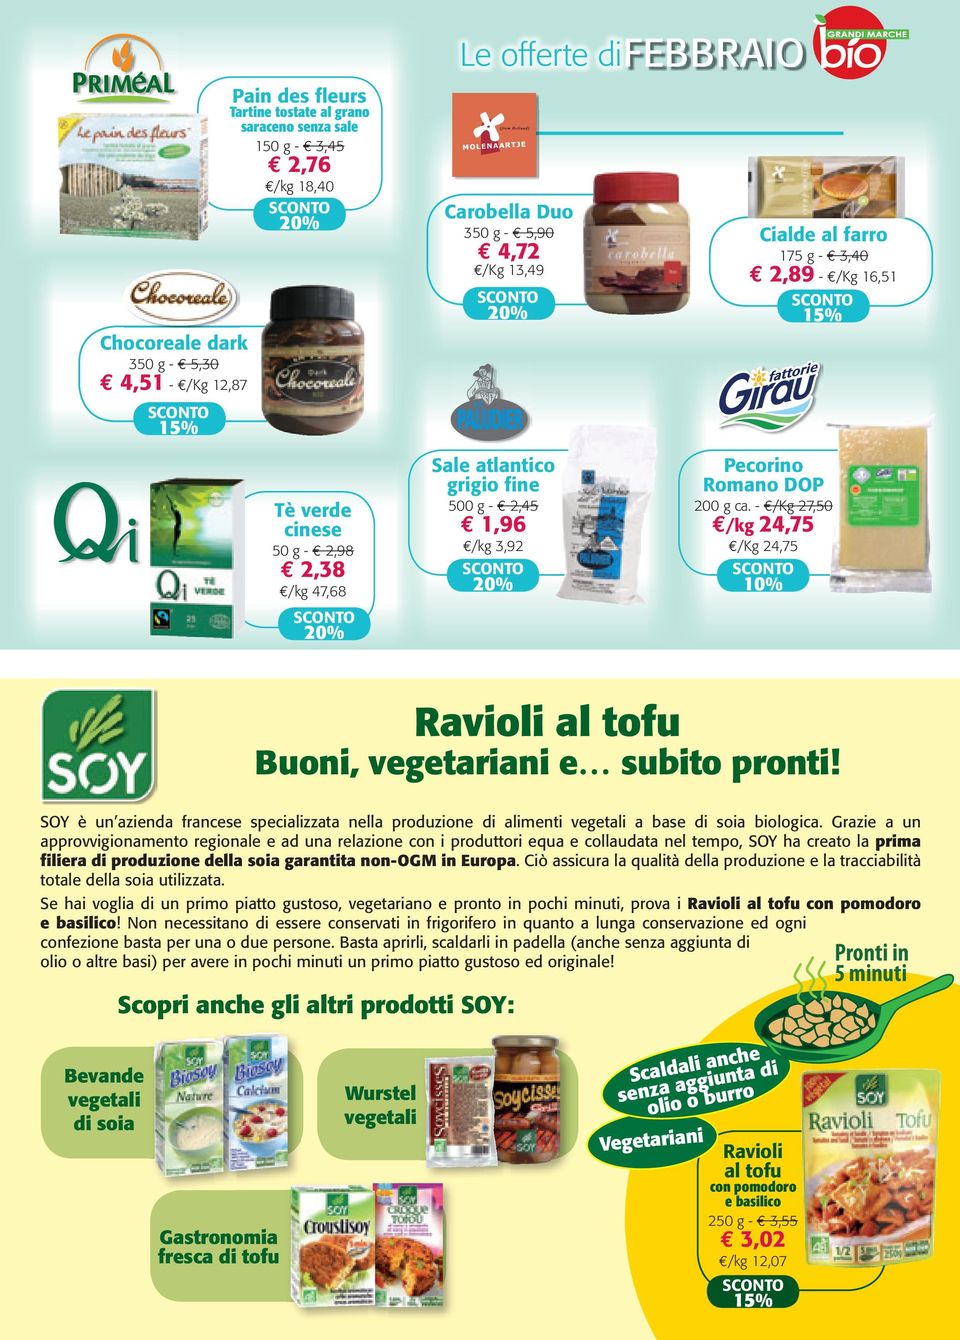 - /Kg 27,50 /kg 24,75 /Kg 24,75 10% Ravioli al tofu Buoni, vegetariani e subito pronti! SOY è un azienda francese specializzata nella produzione di alimenti vegetali a base di soia biologica.